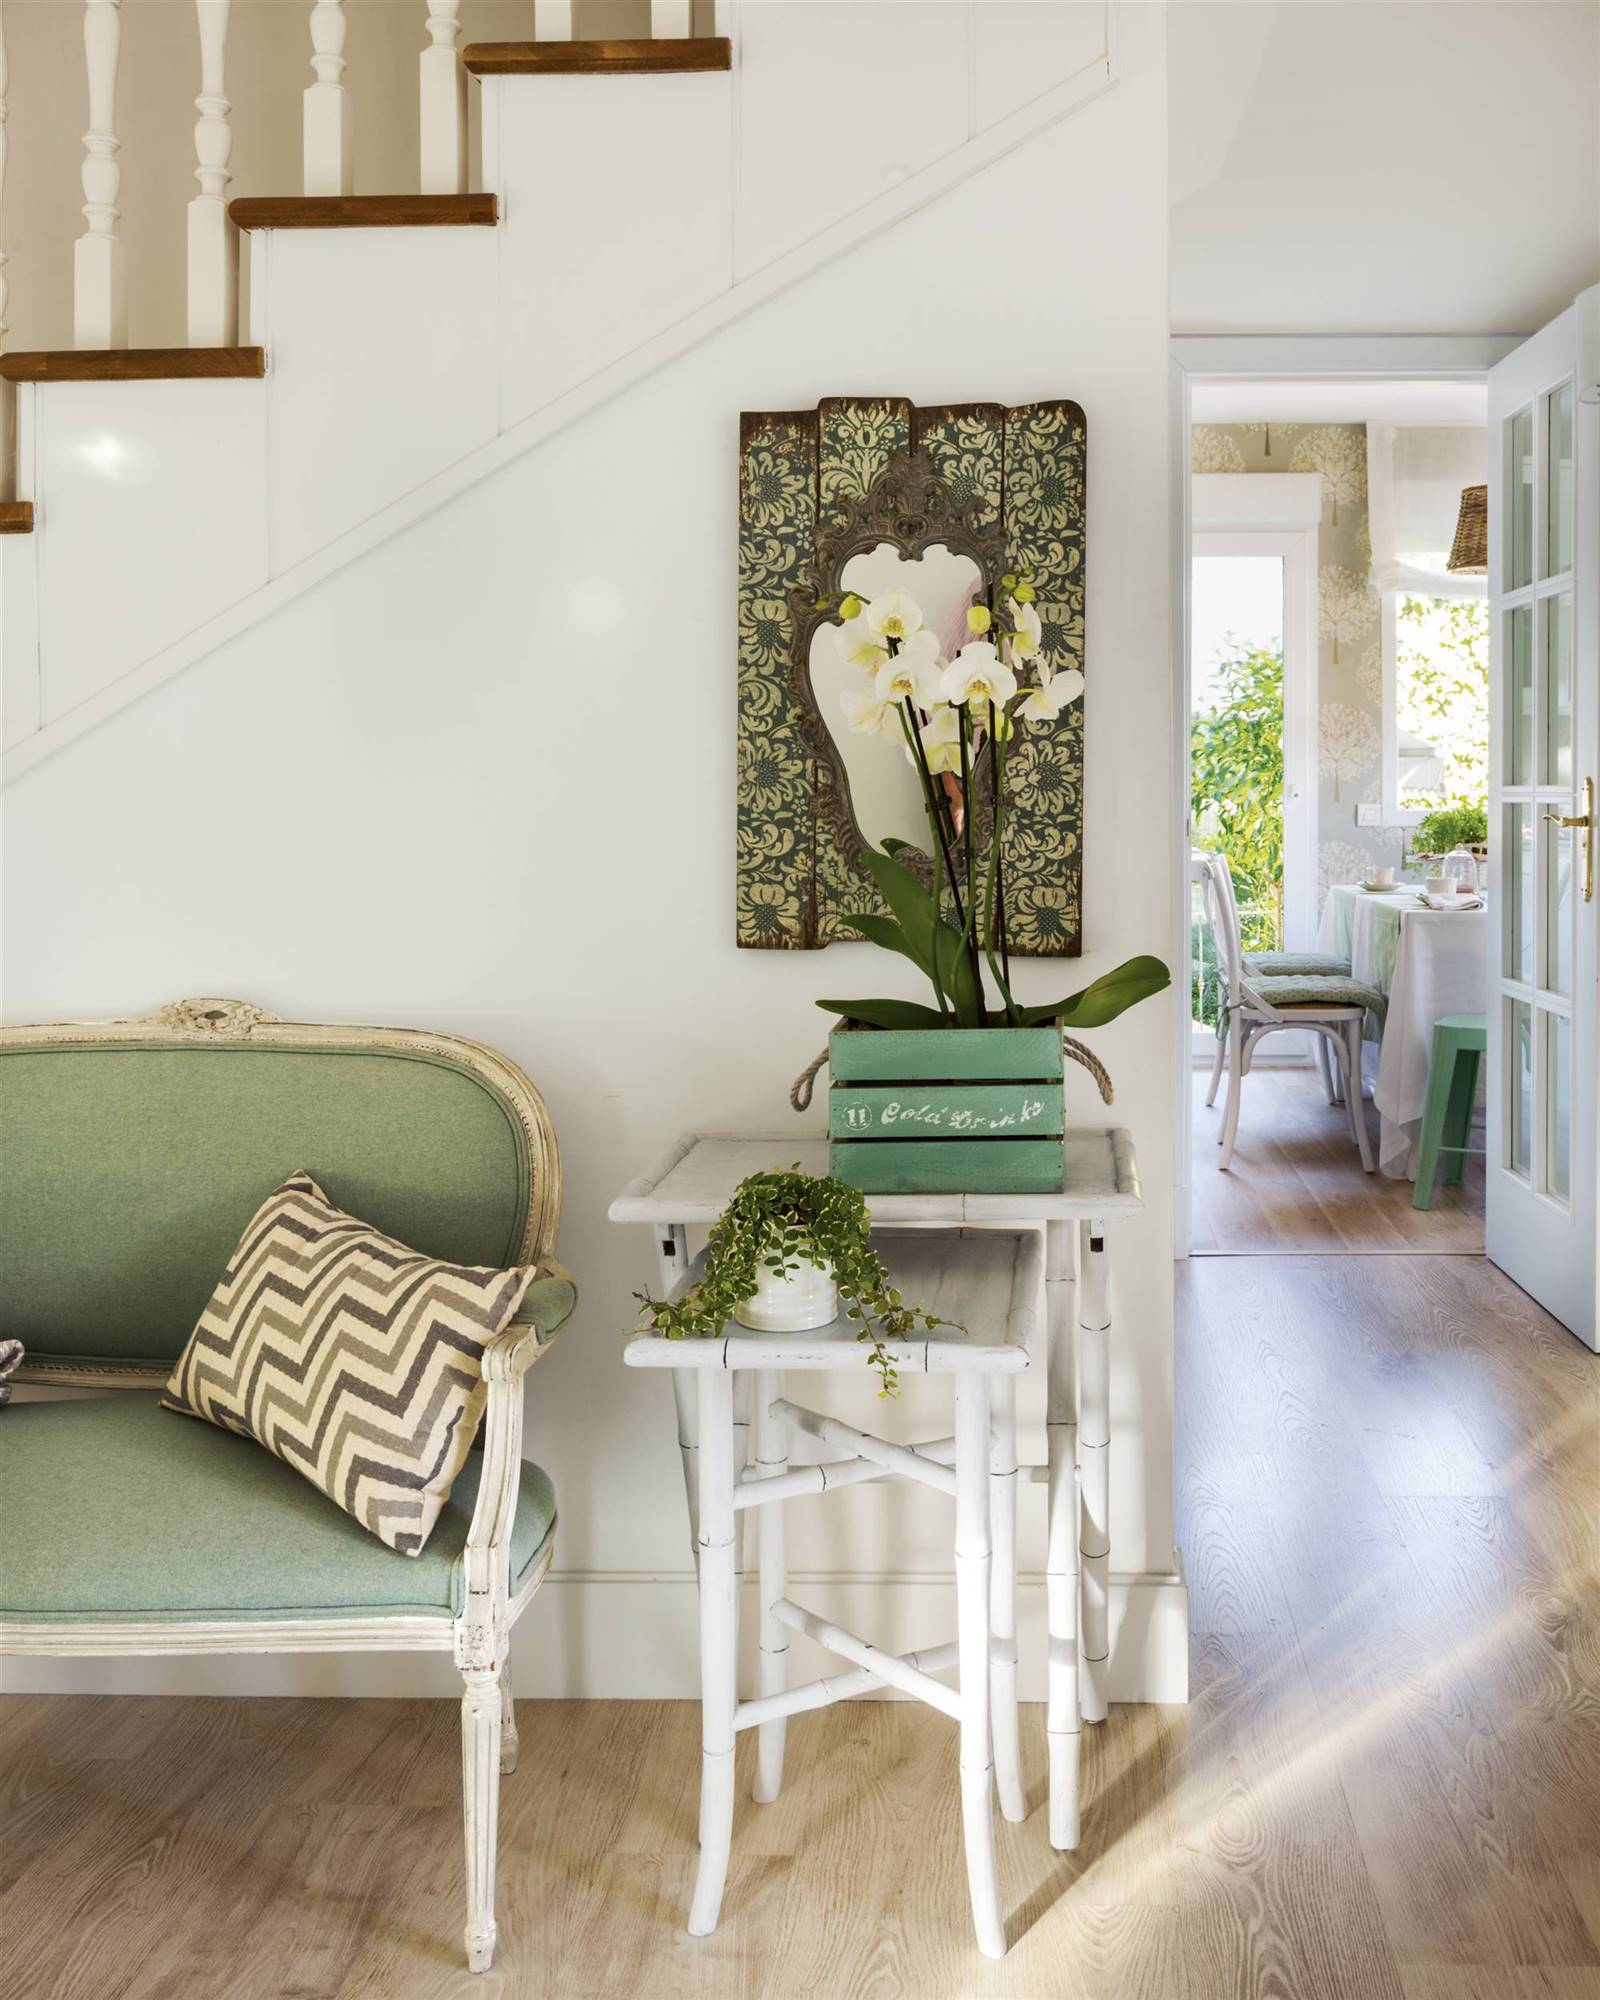 Recibidor con banco tapizado en verde y mesas nido blancas.